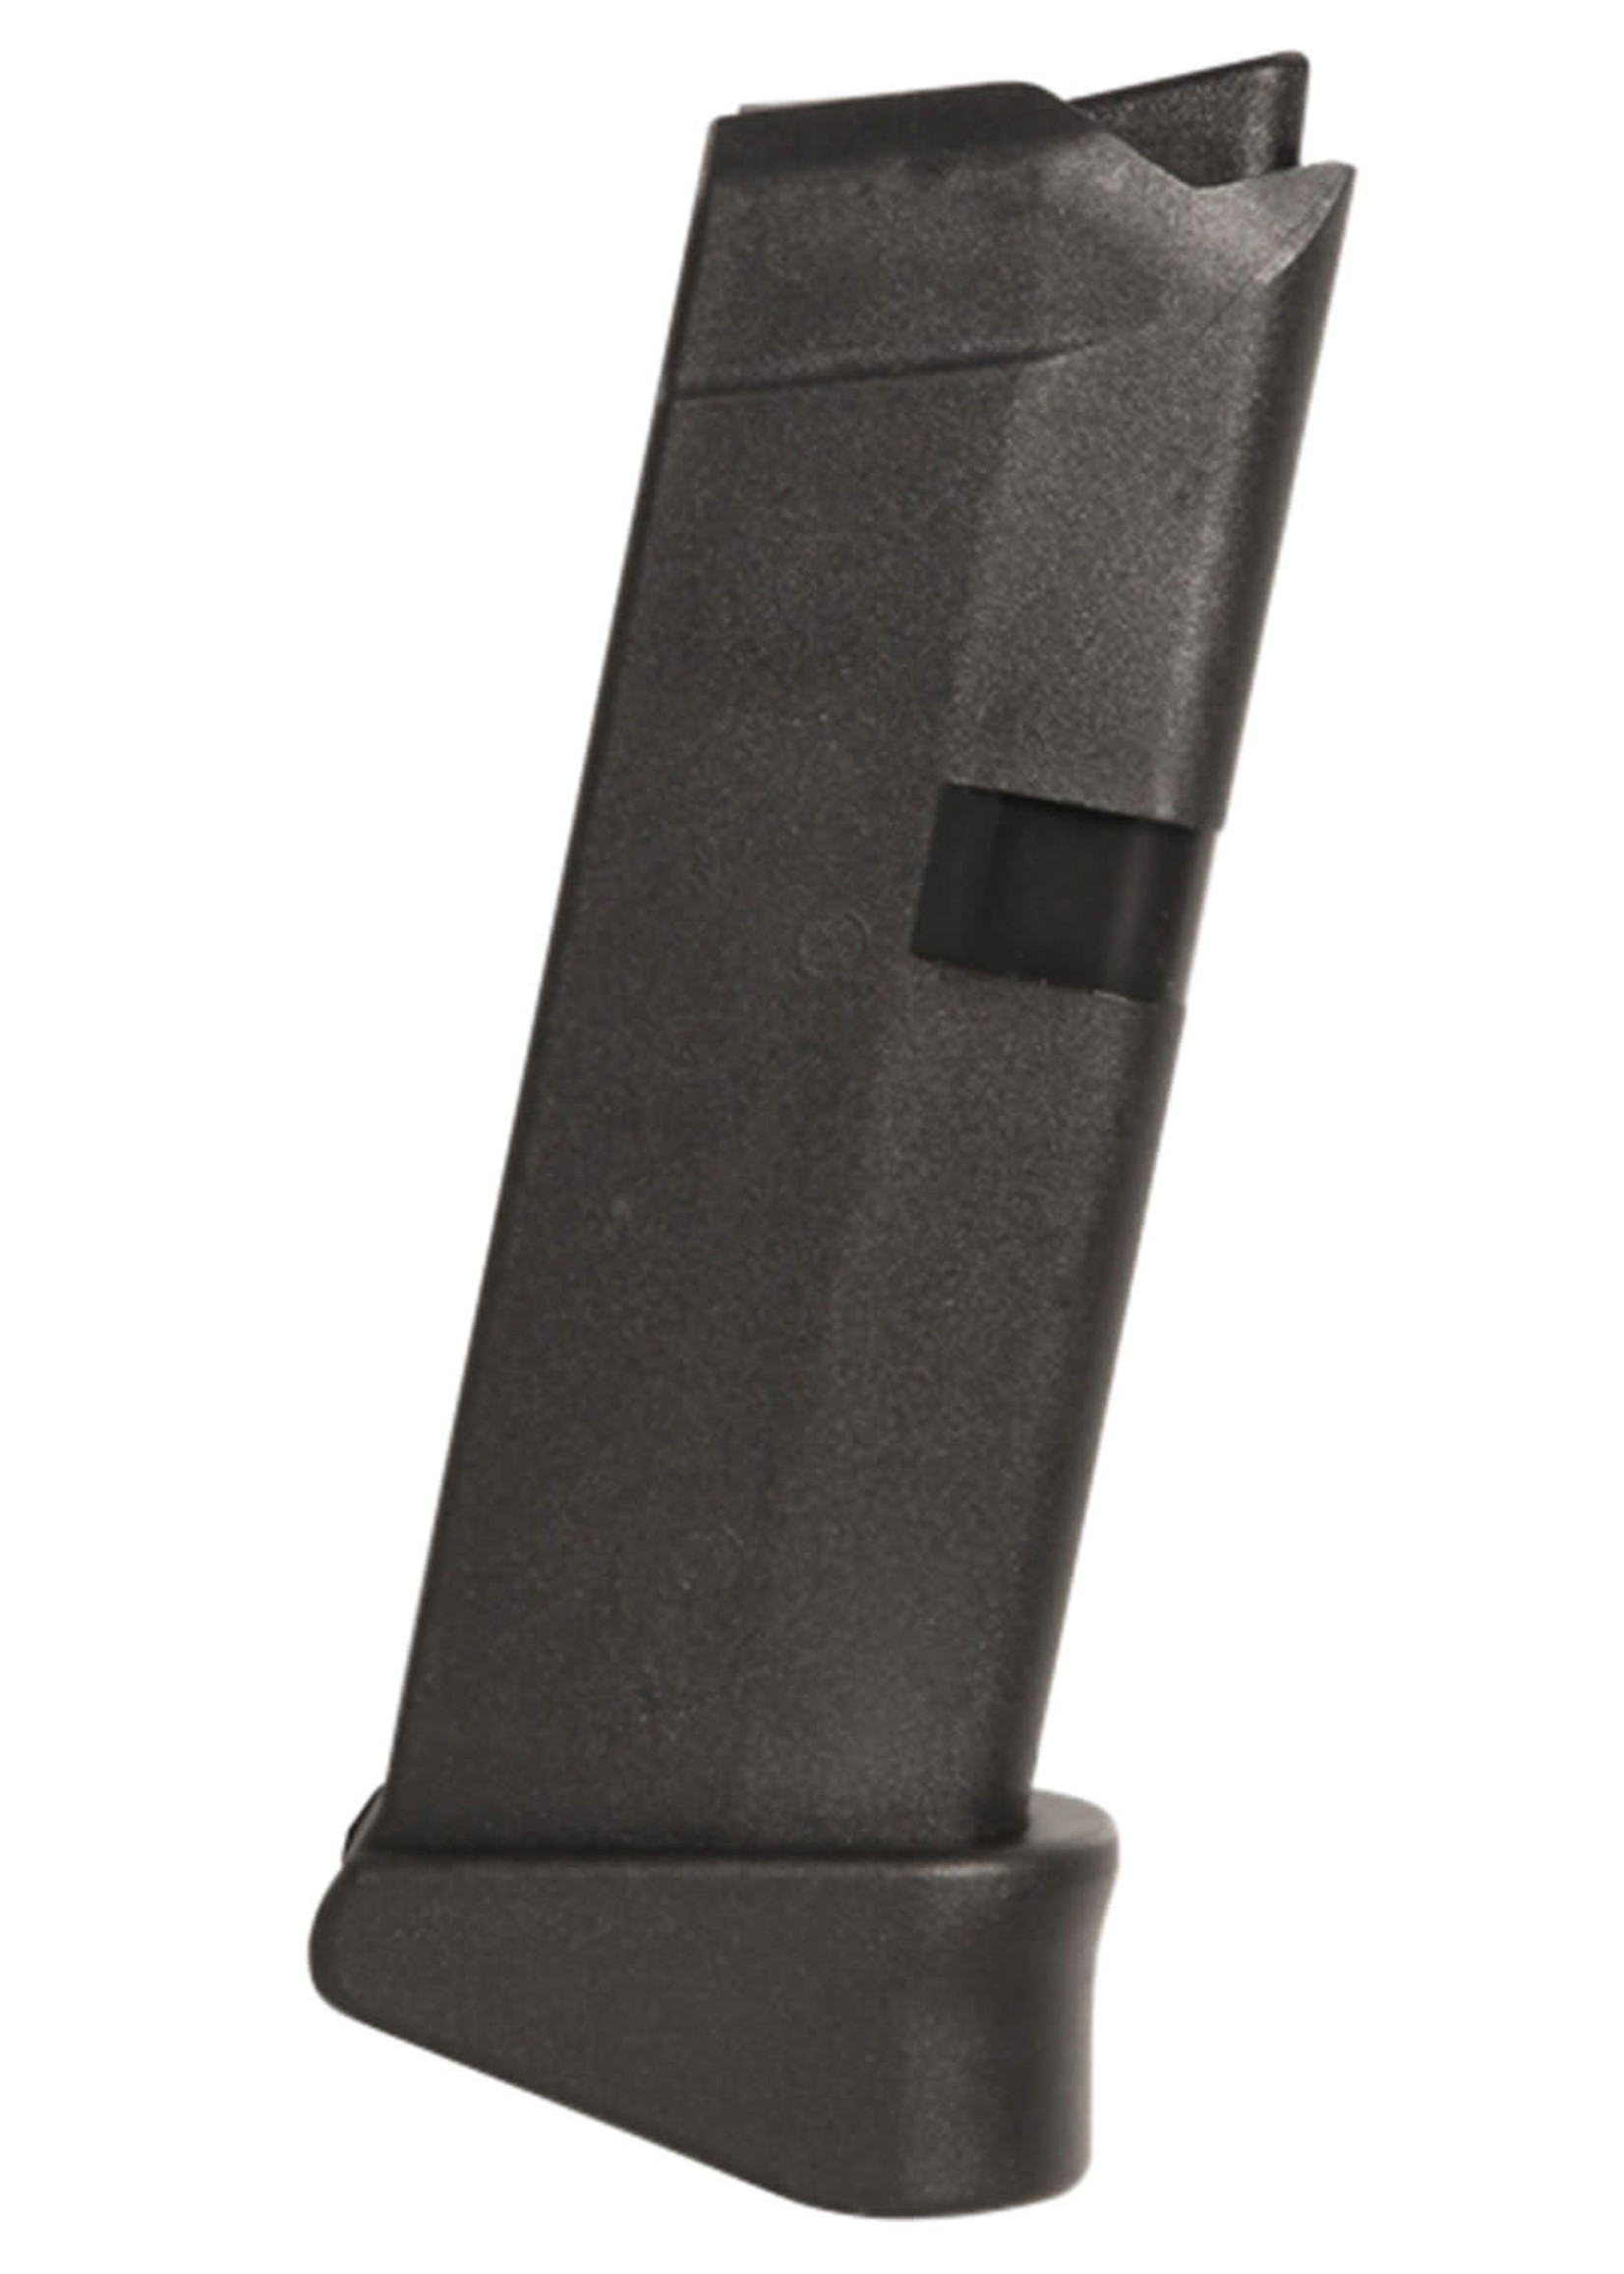 Glock OEM Black Extended 6rd 9mm Luger for Glock 43